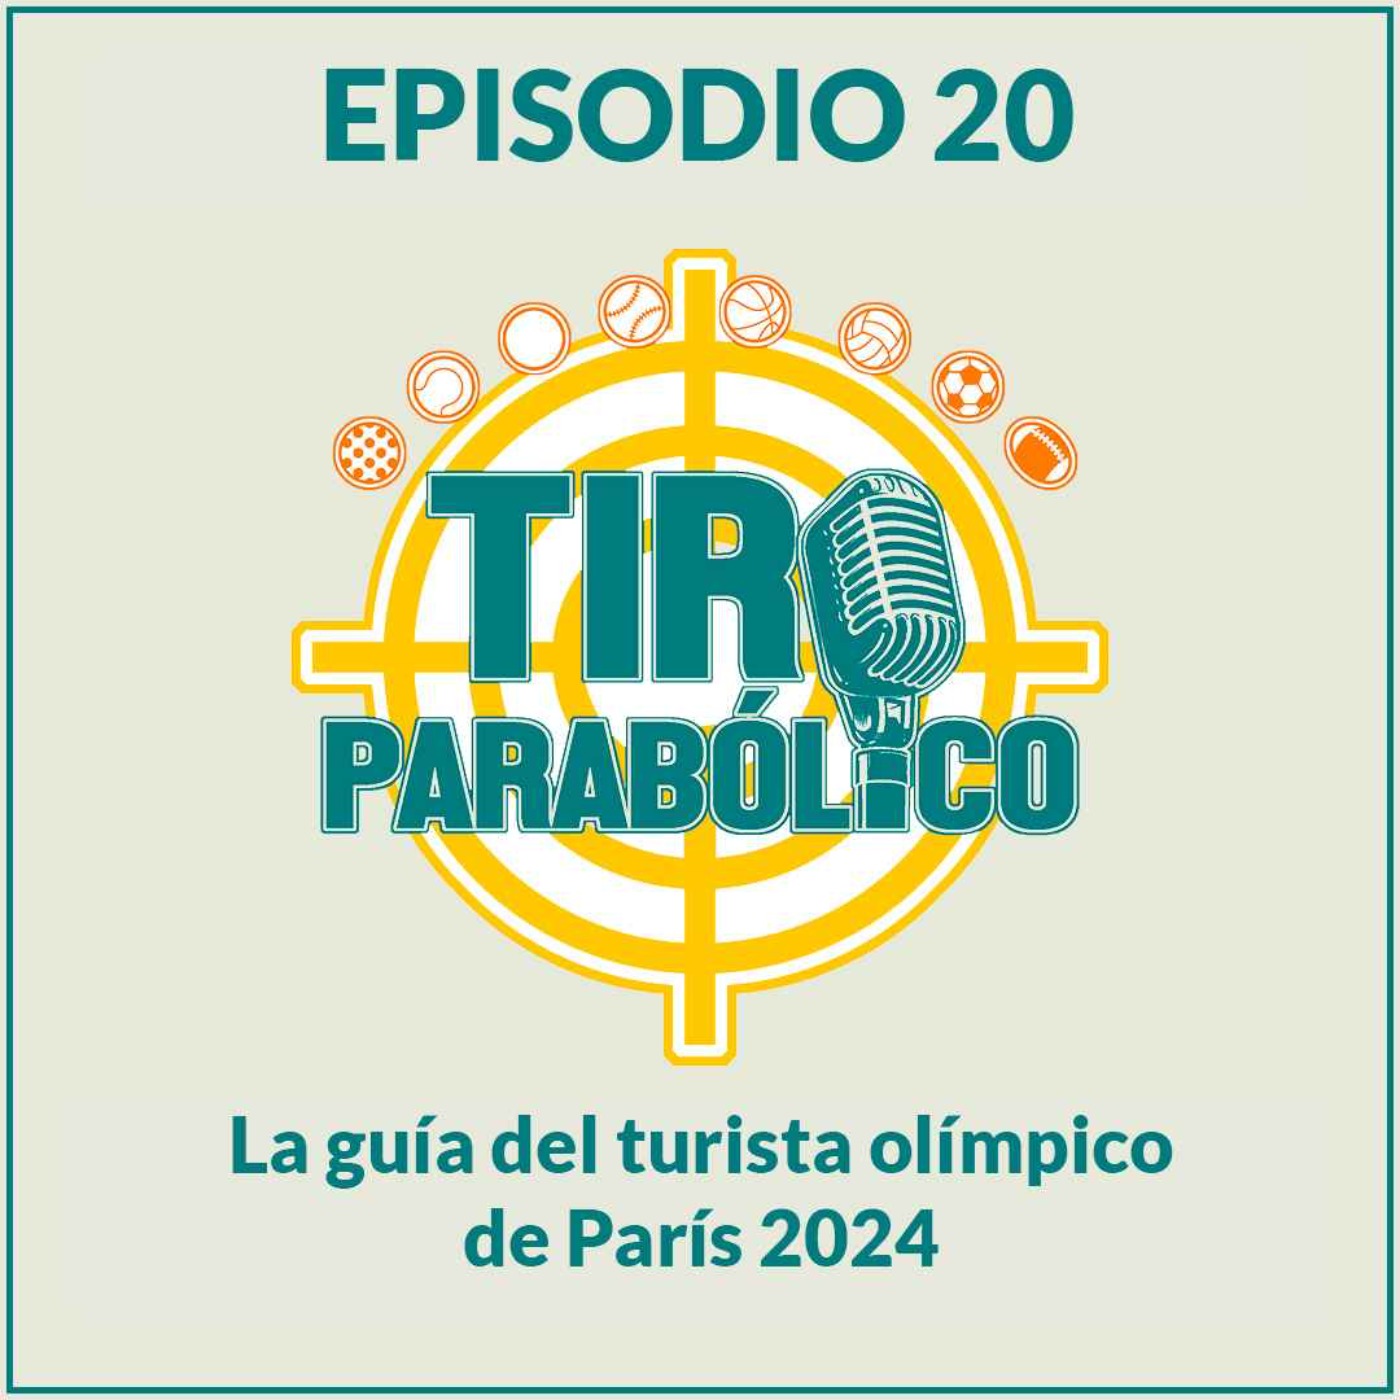 La guía del turista olímpico de París 2024